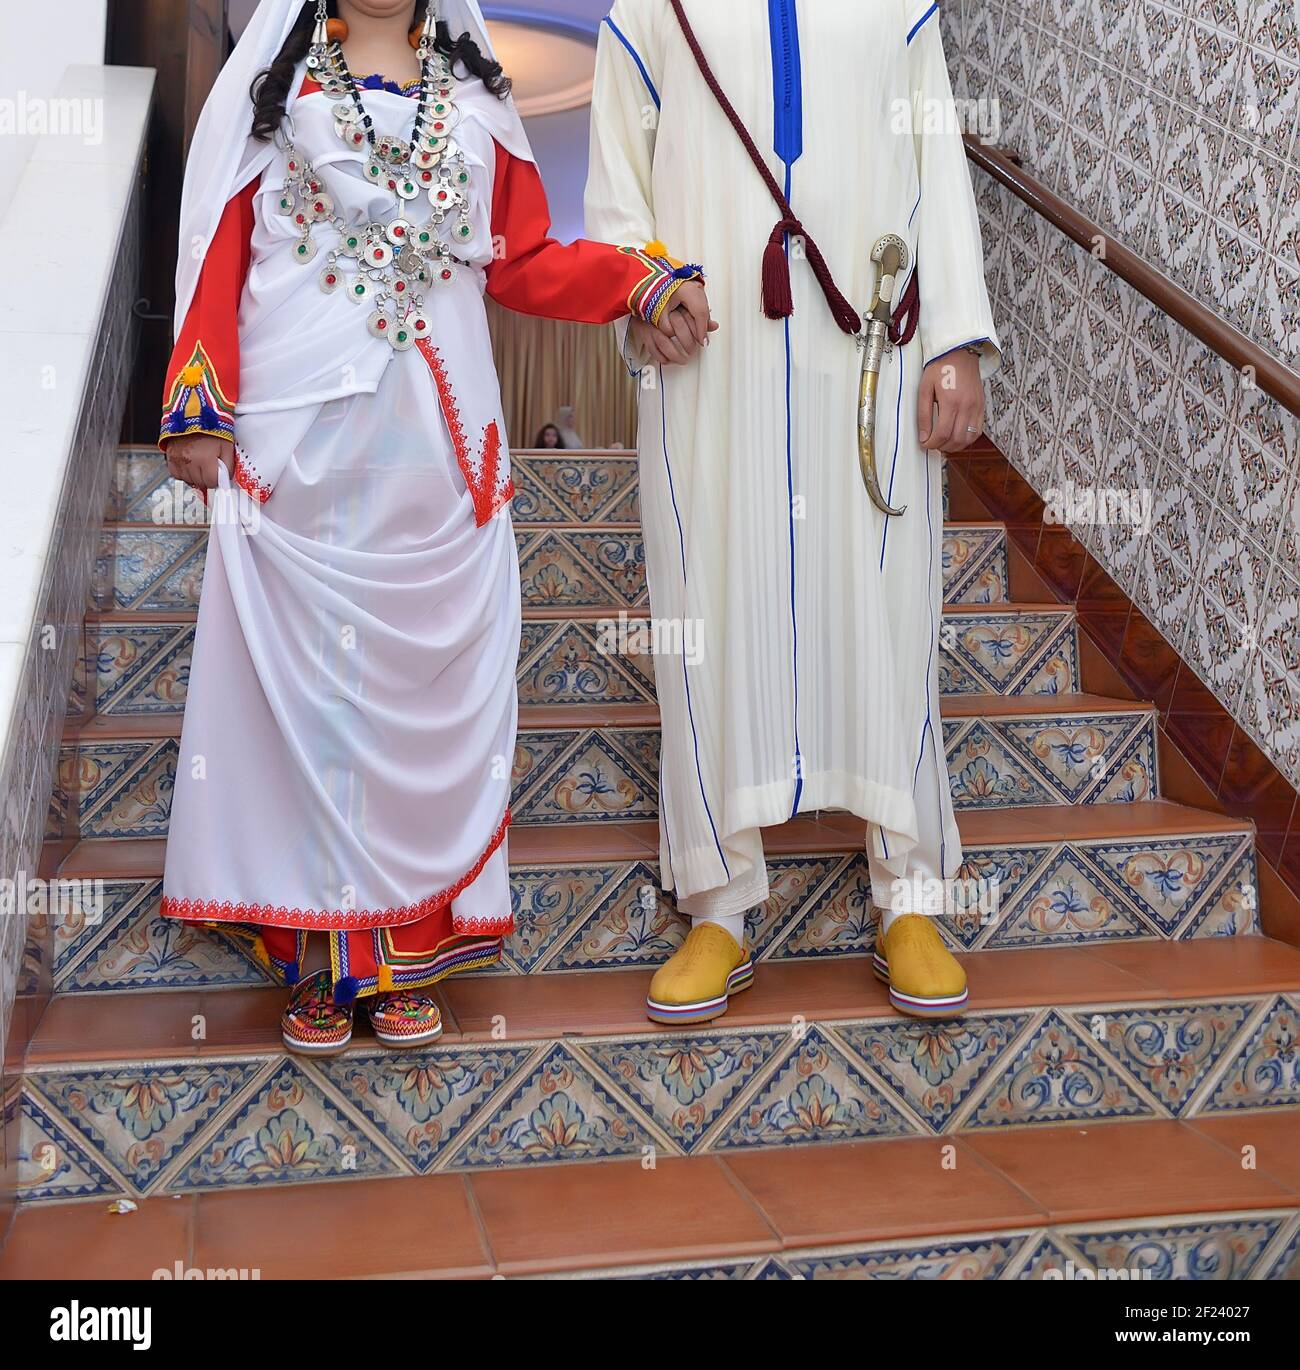 La robe traditionnelle des épouses marocaines Photo Stock - Alamy